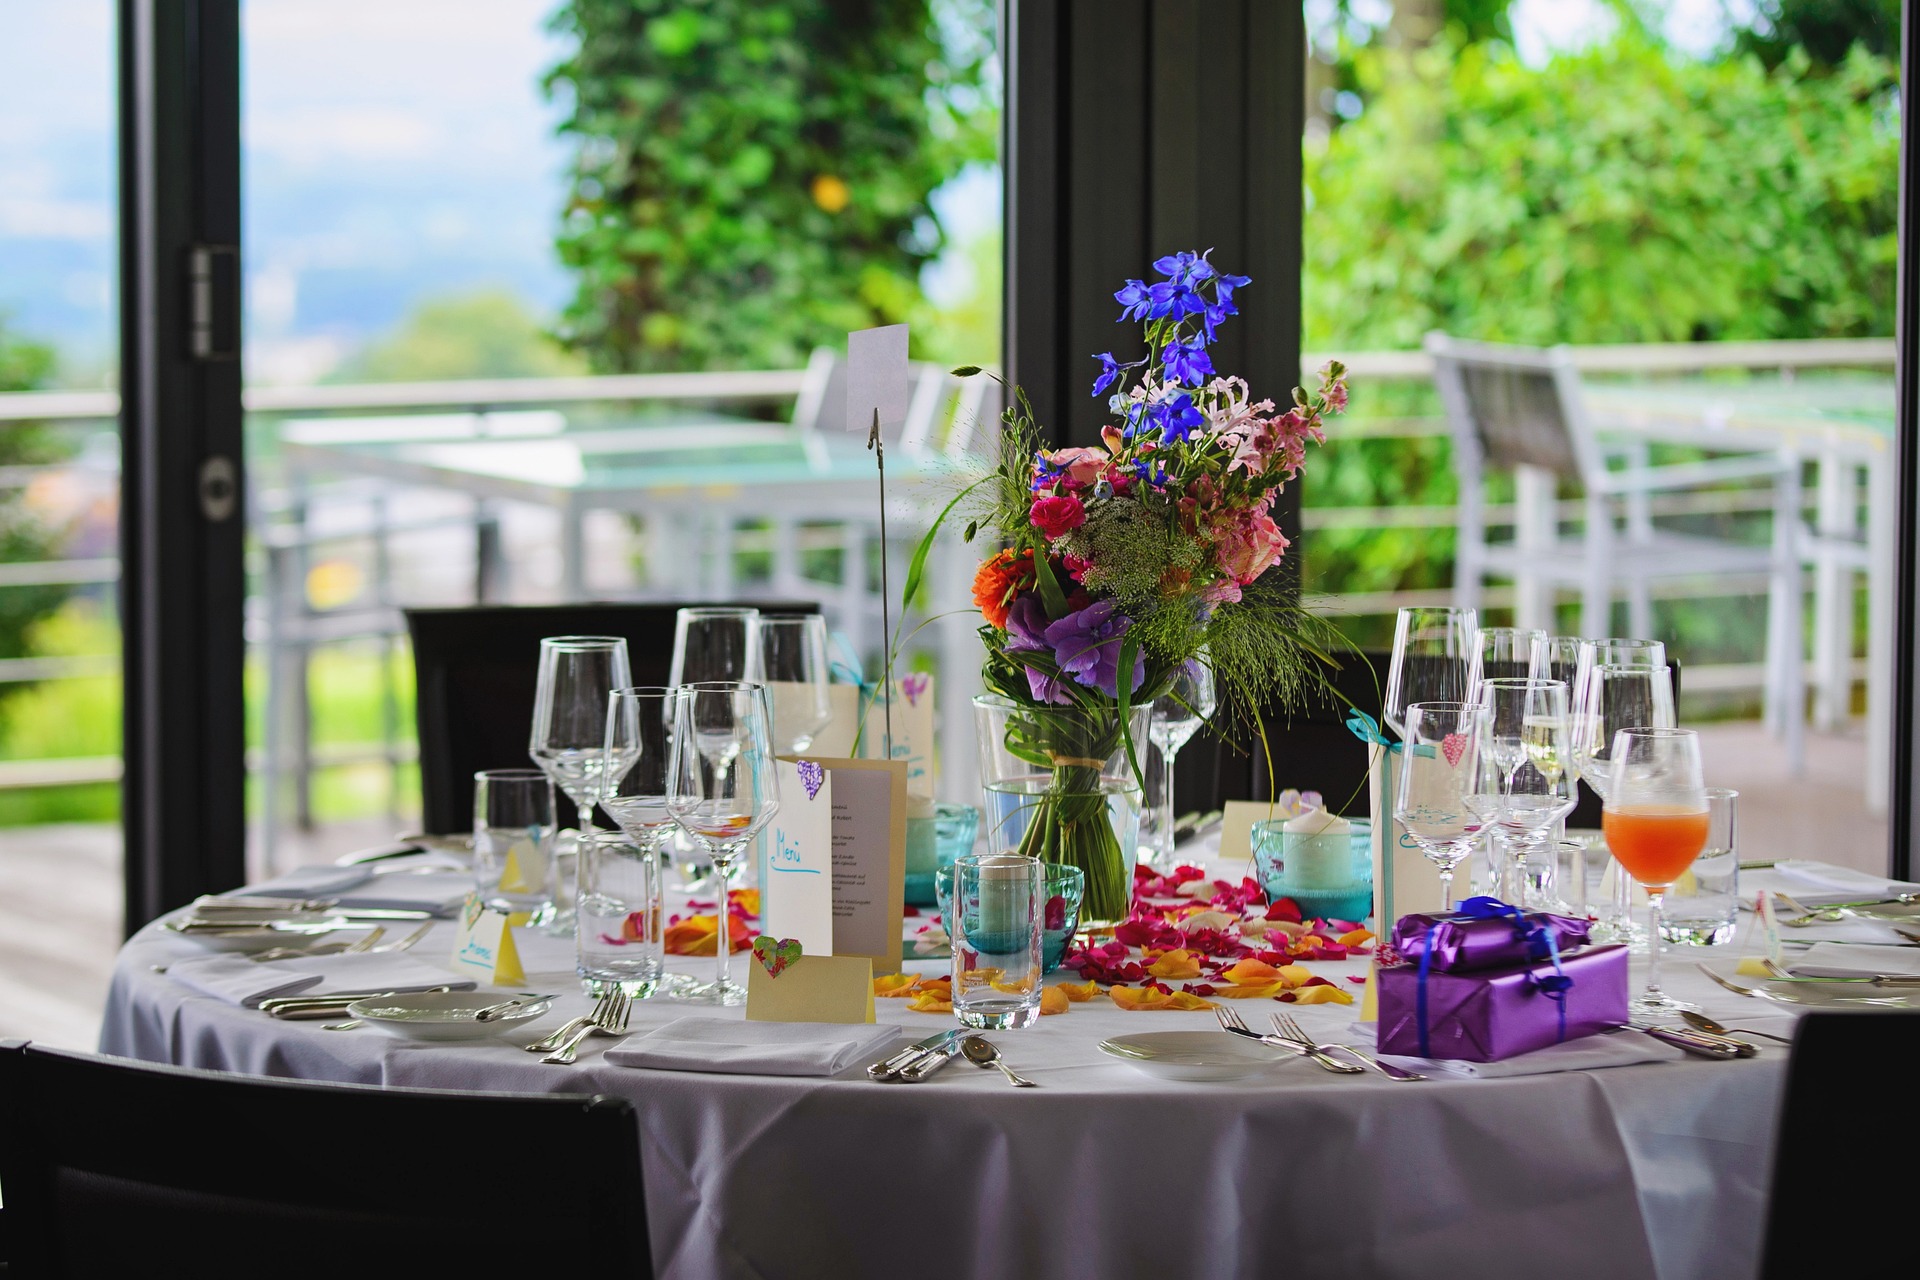 호텔 식사하는 식탁 위에 생일 축하 장식이 펼쳐져있다.